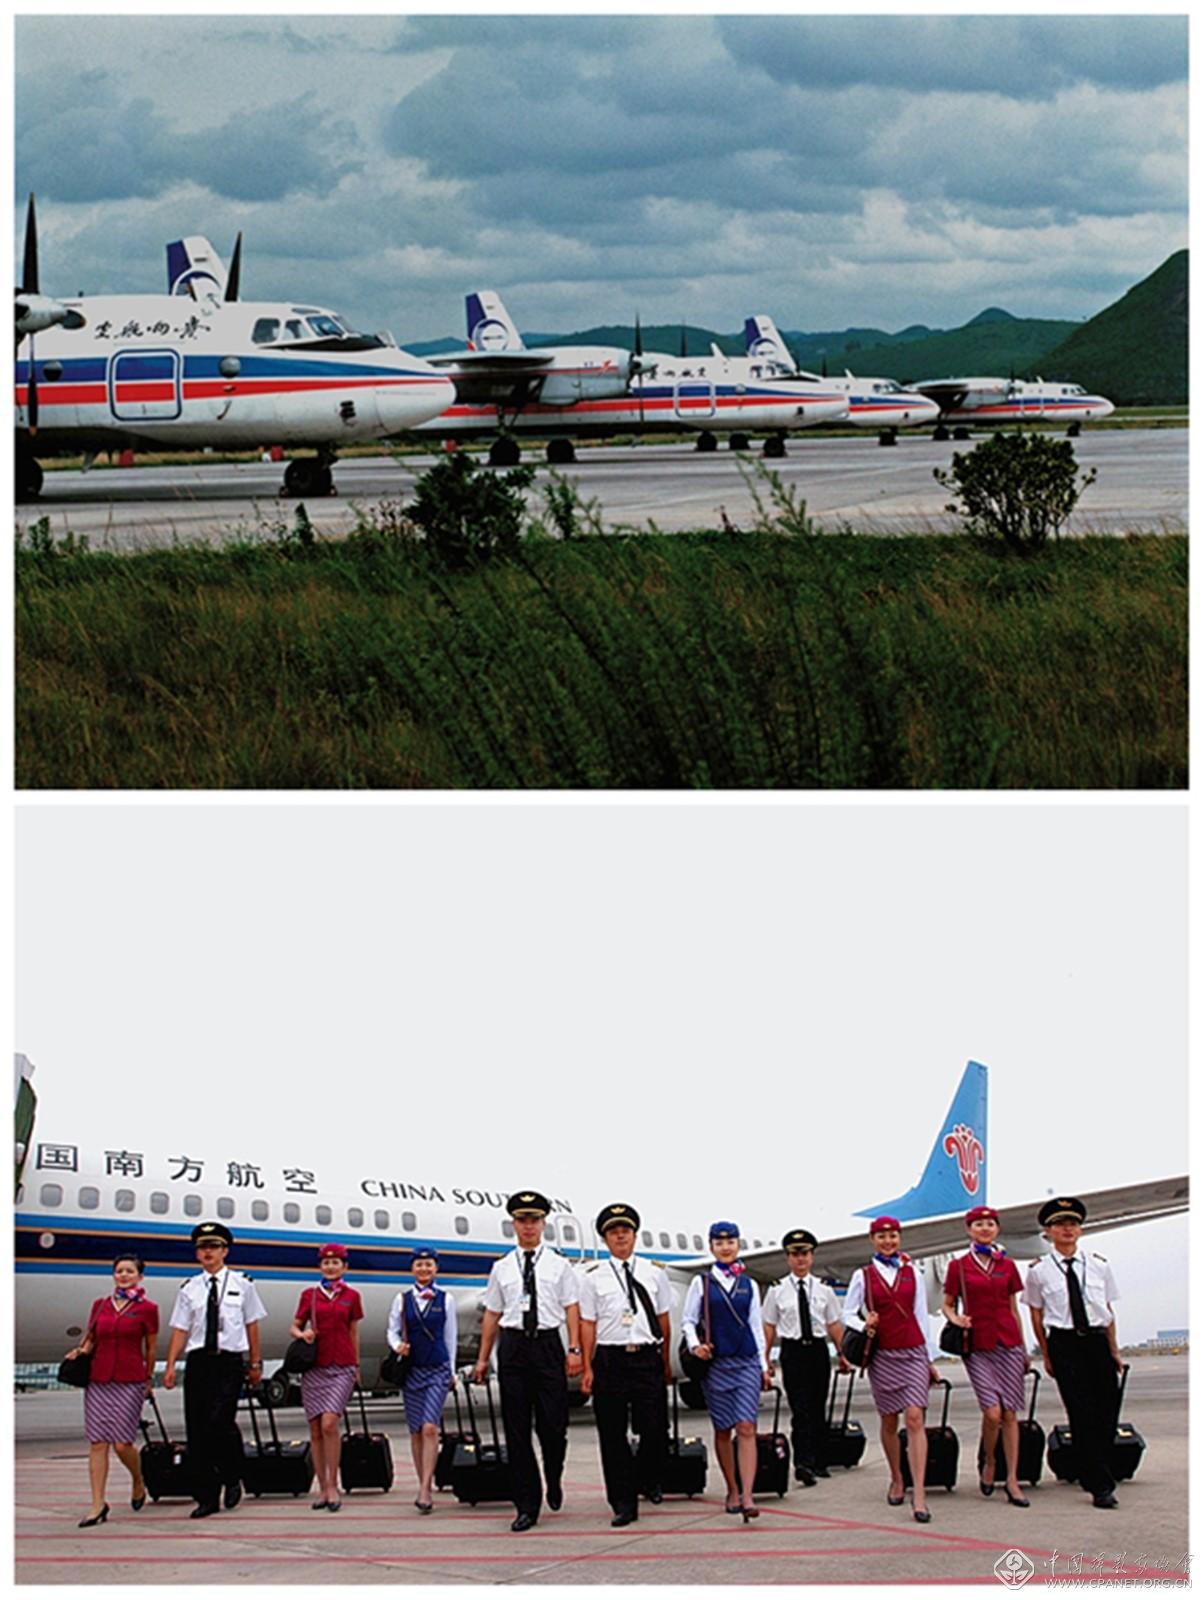 1991年11月开航时期的贵州省航空公司运七飞机与已有19架波音737--800型机队的南航贵州航空有限公司飞行、空乘队伍陈志军摄.jpg